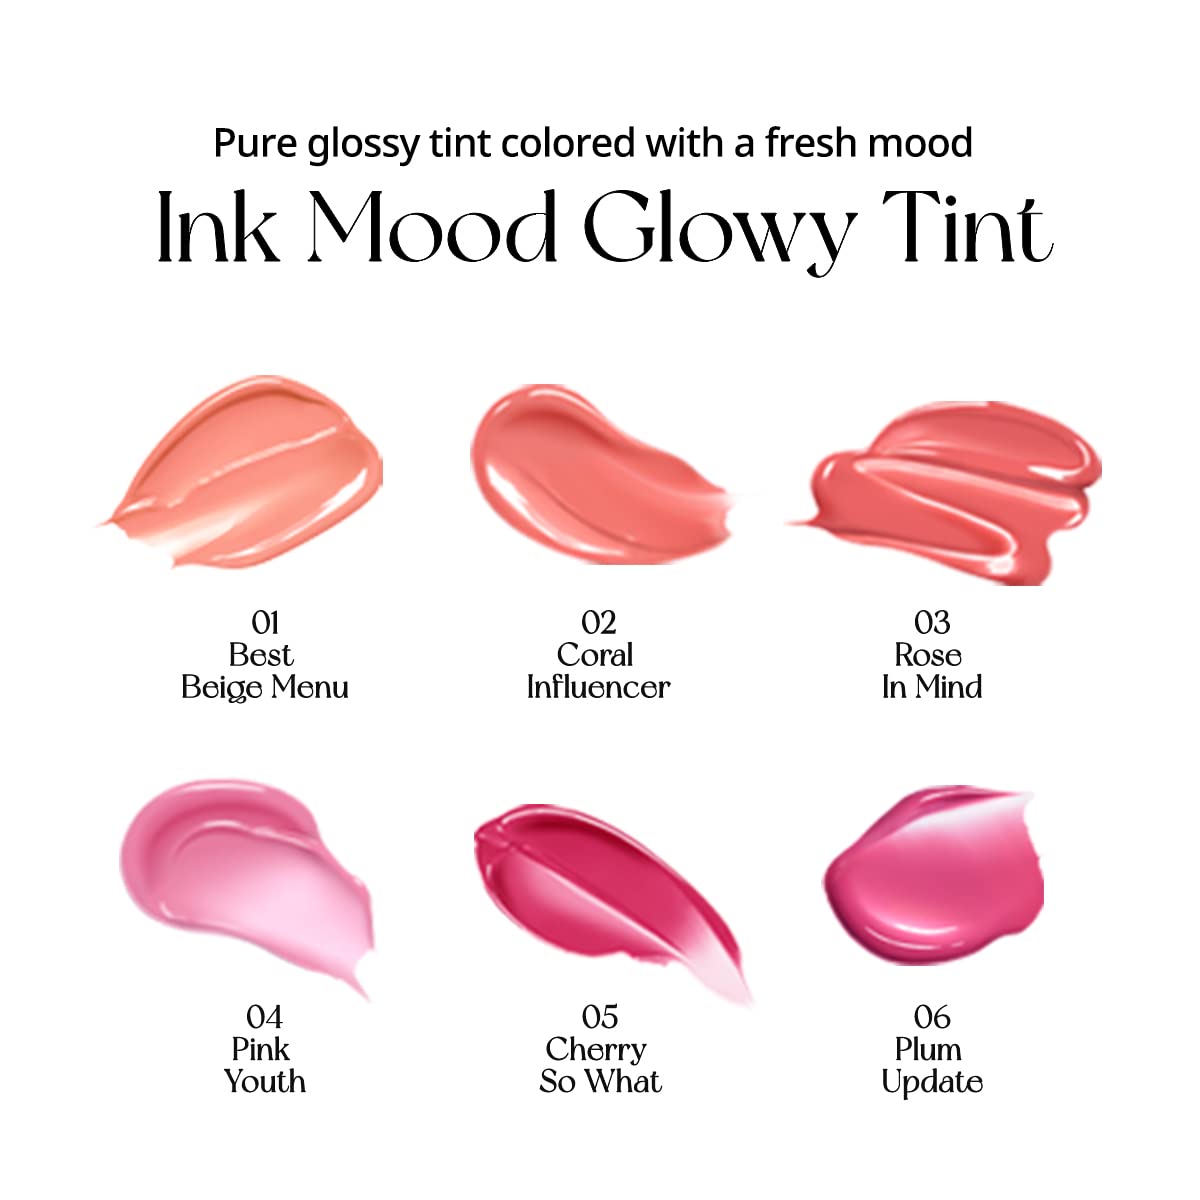 Peripera Ink Mood Glowy Tint | 03 Rose In Mind